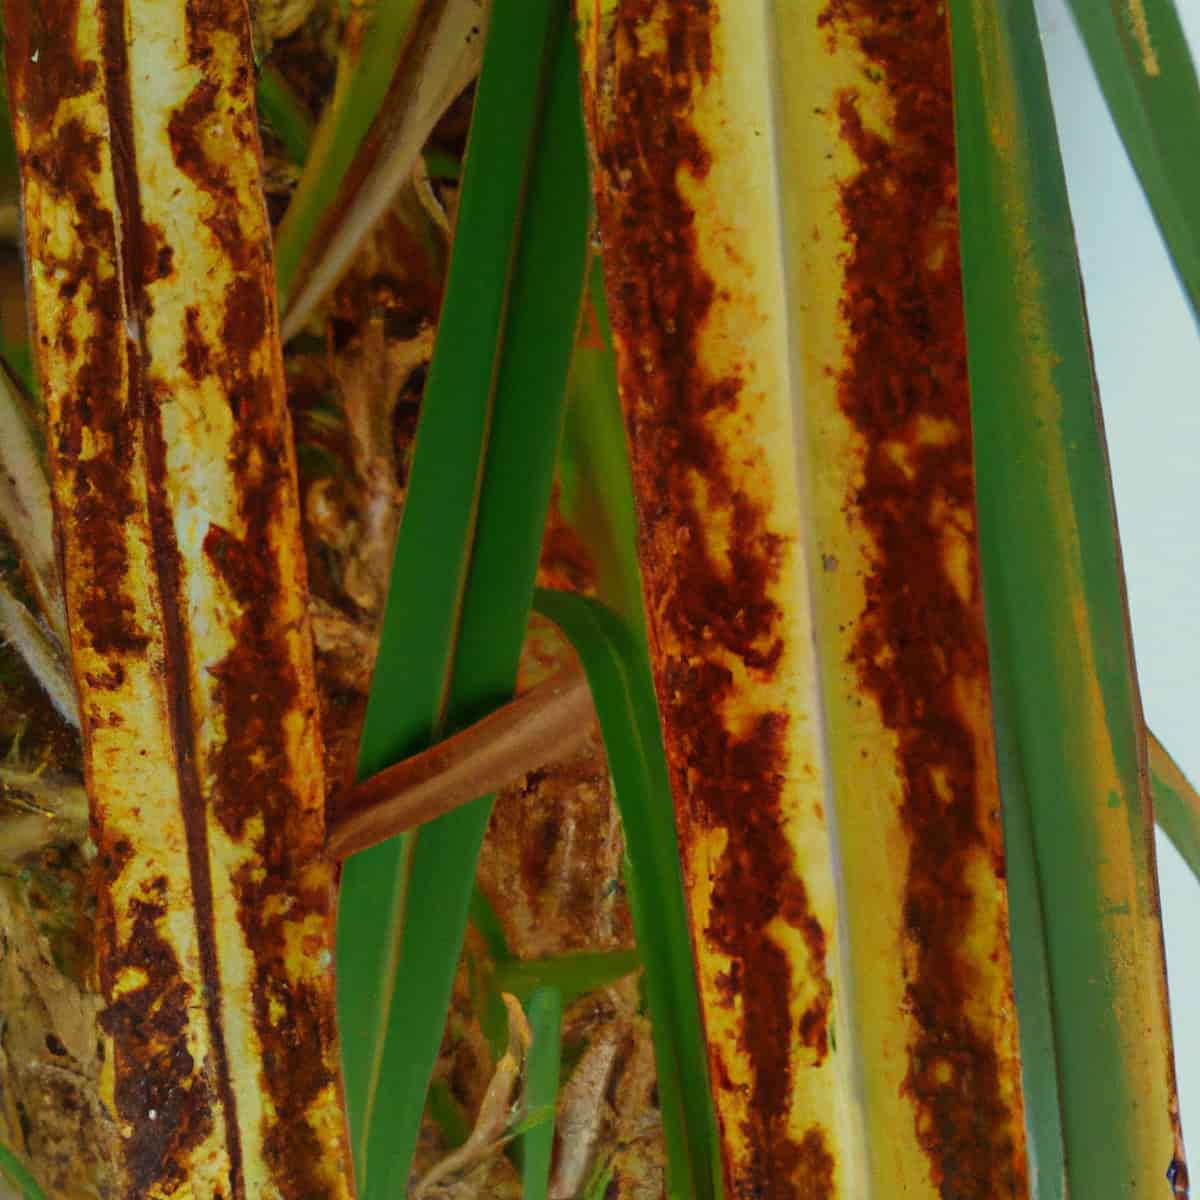 Rust Management in Sugarcane